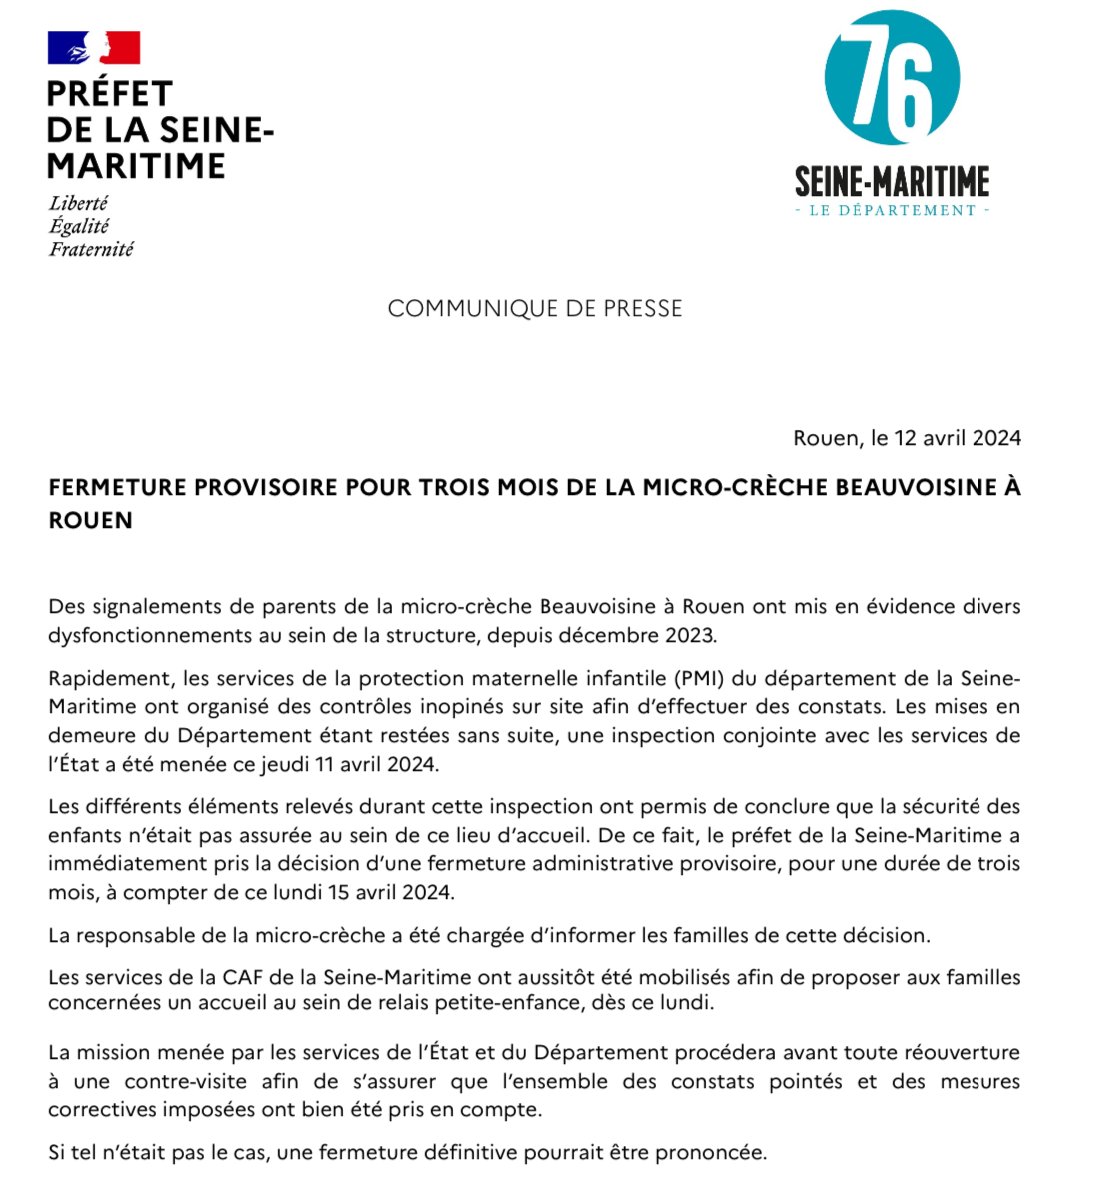 Fermeture provisoire de la micro-crèche Beauvoisine #Rouen pour une durée de trois mois. Le communiqué de presse ⤵️